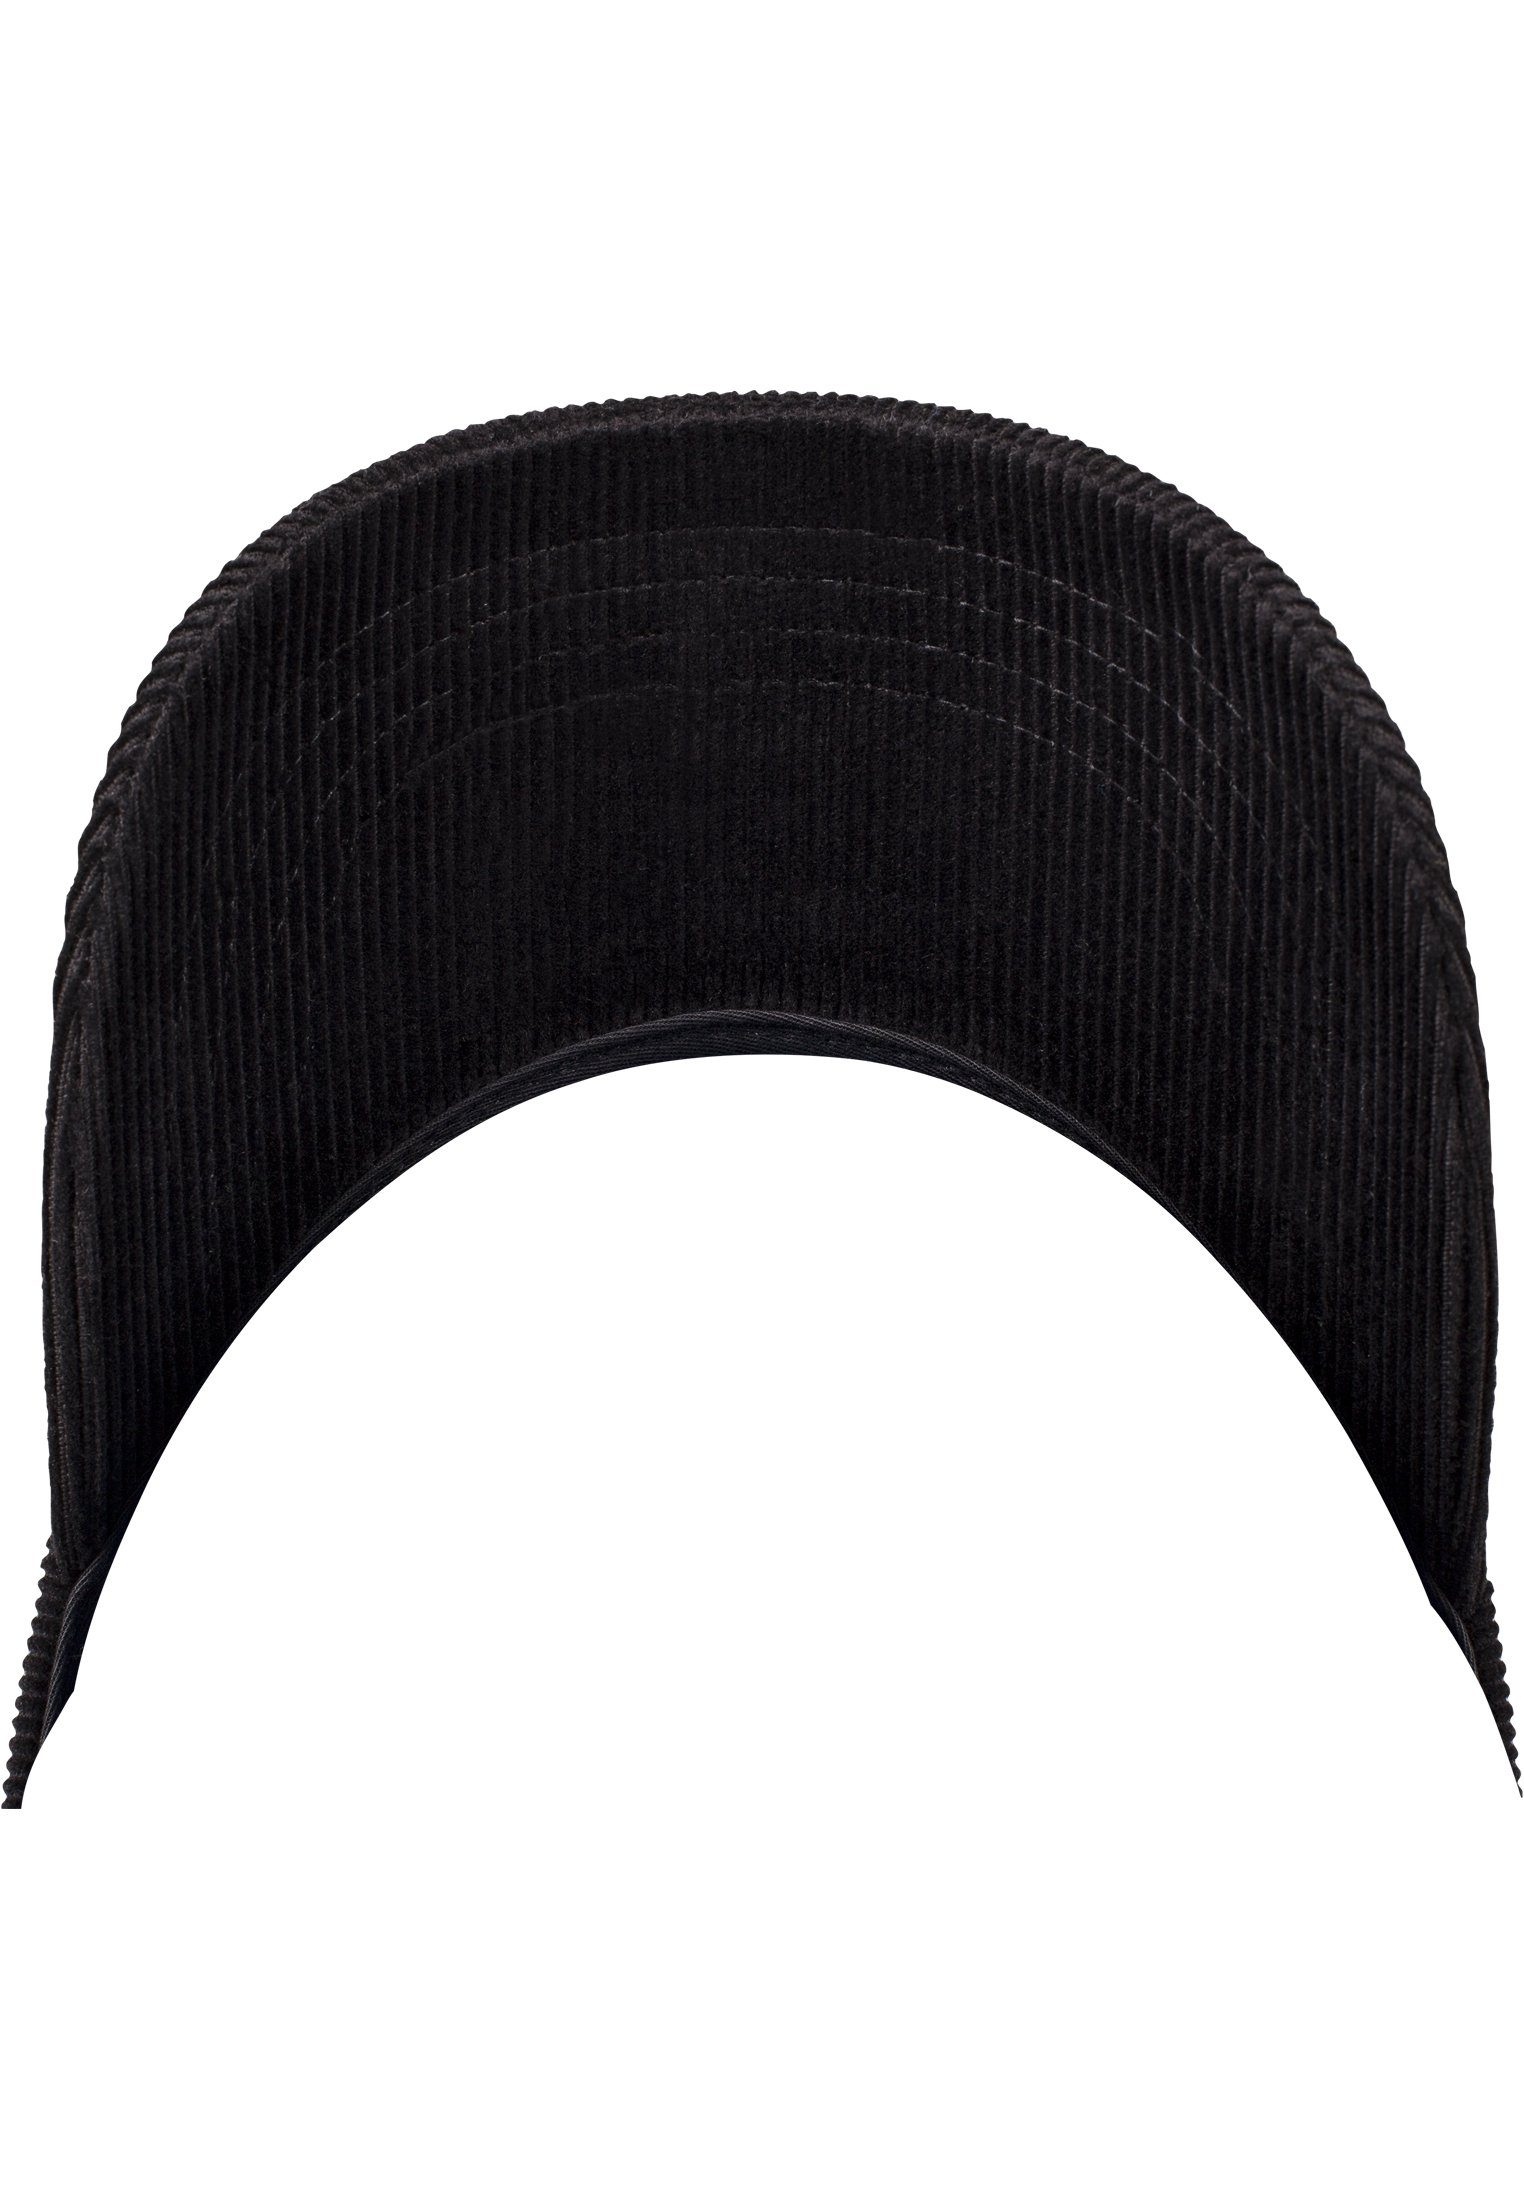 Flexfit Flex Cap Accessoires Low black Corduroy Profile Cap Dad